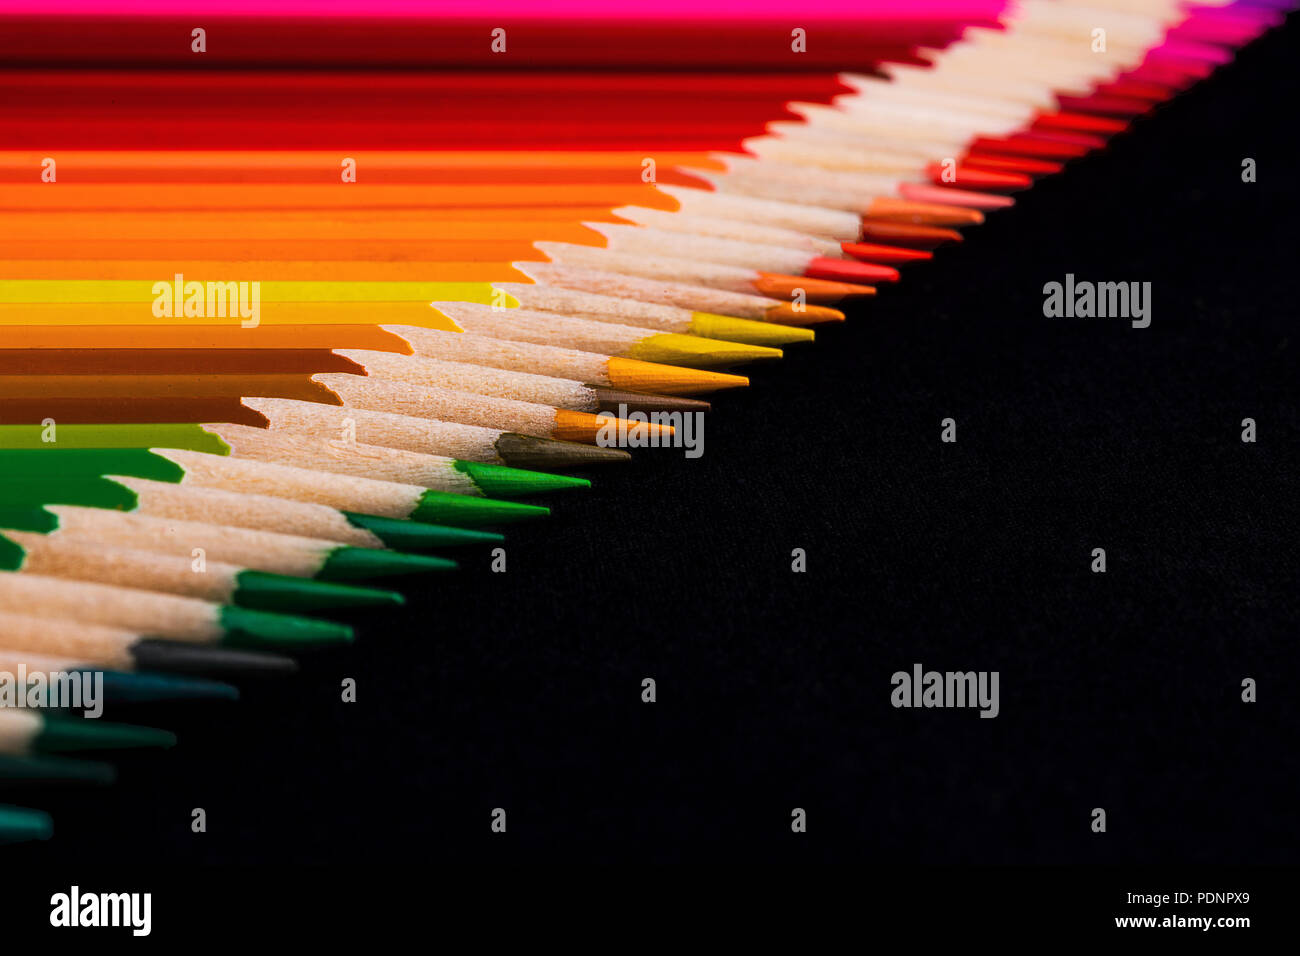 Une macro image d'une ligne diagonale de crayon de couleur conseils affûtés avec beaucoup d'espace négatif noir pour copie. La ligne est très ordonné et établi Banque D'Images